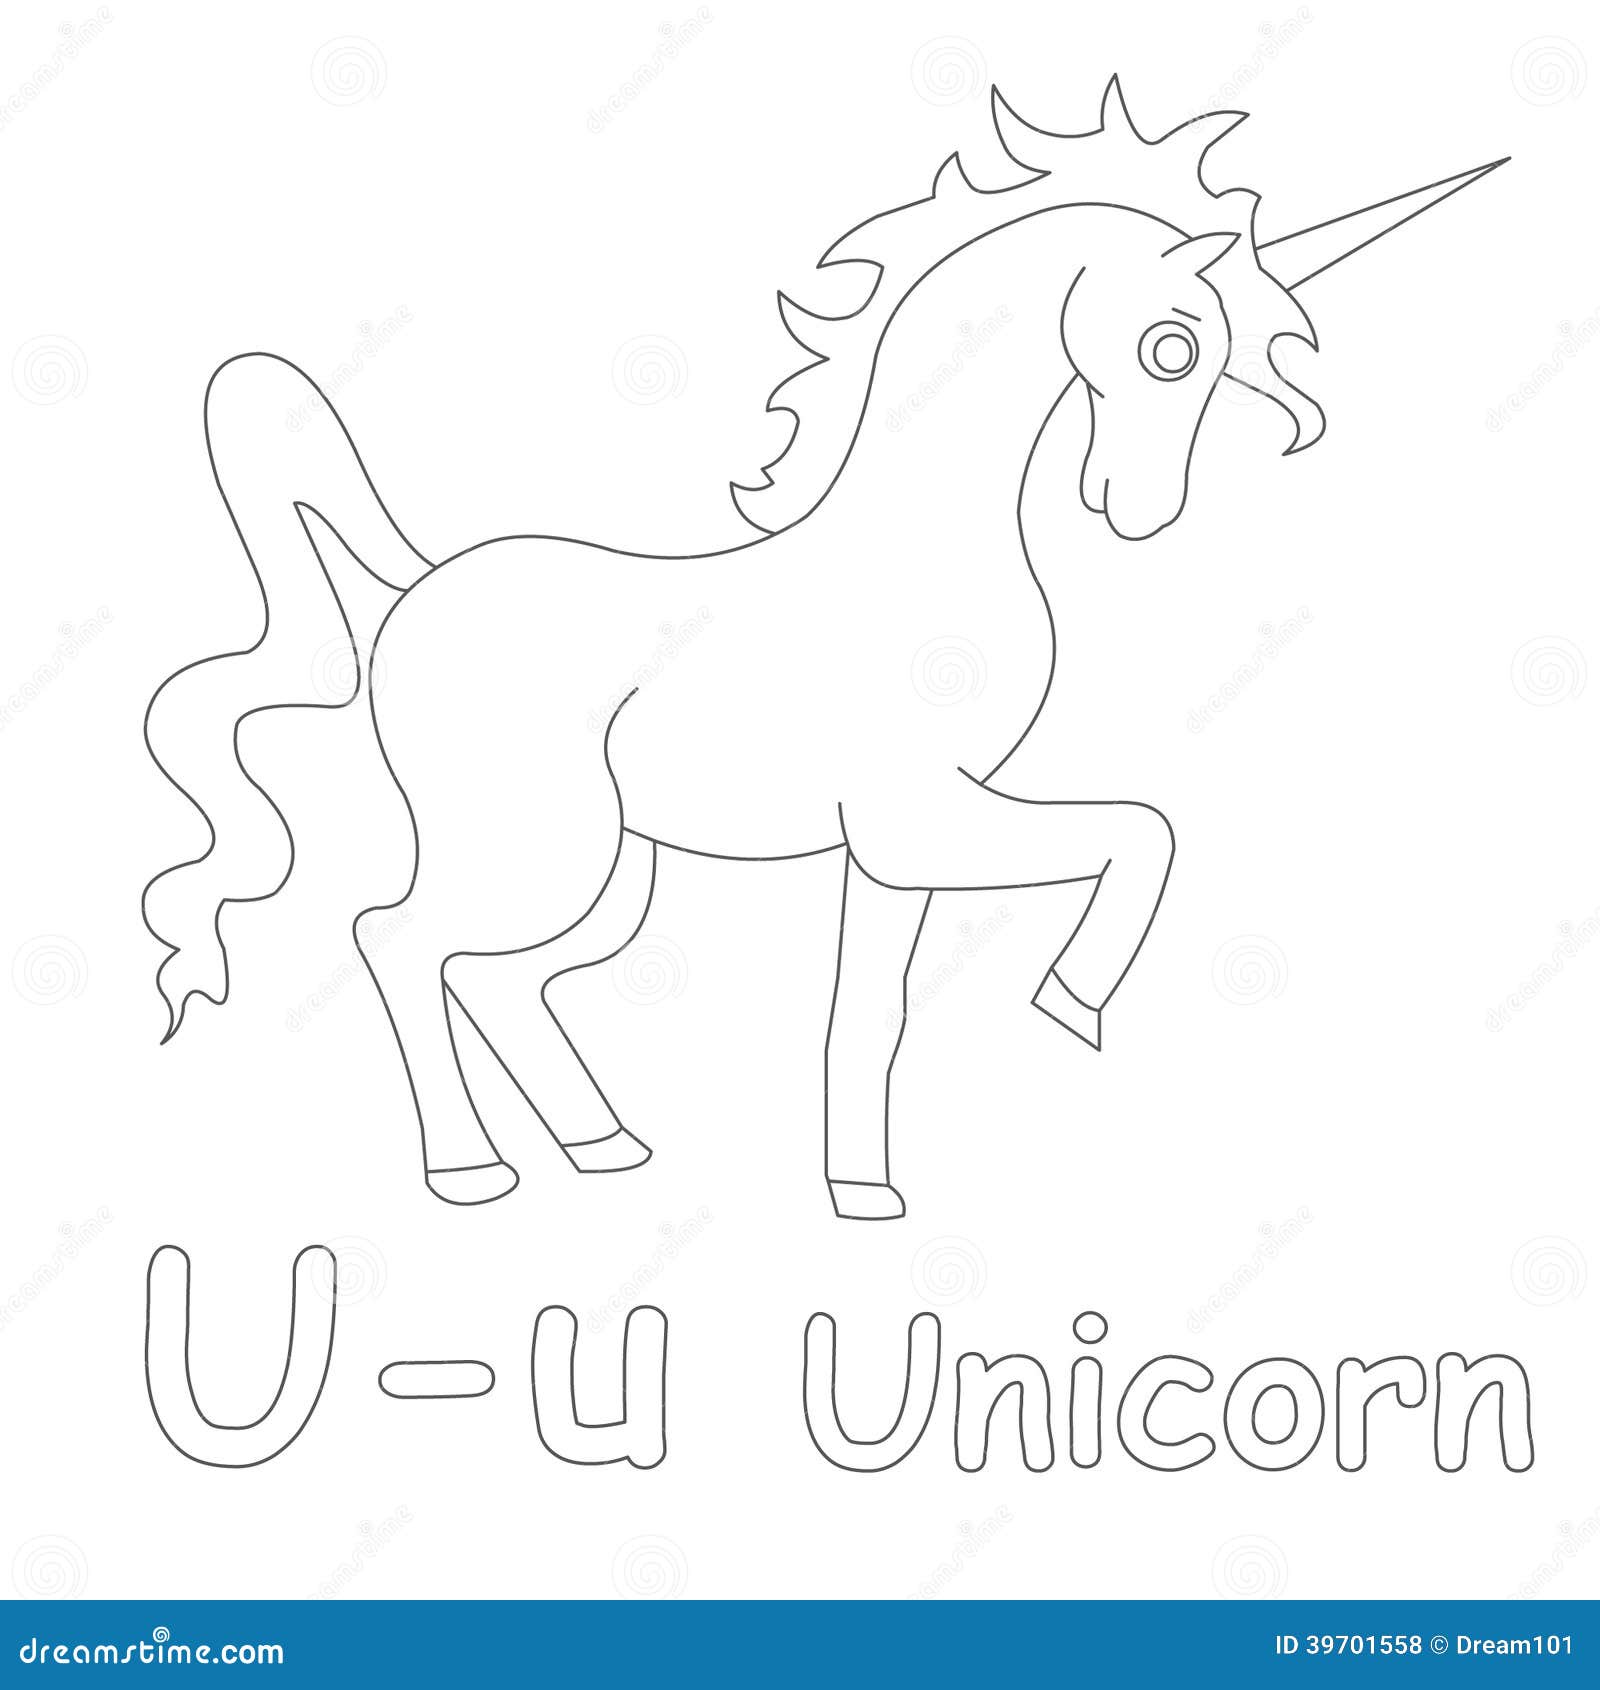 U Für Unicorn Coloring Page Stock Abbildung   Illustration von ...